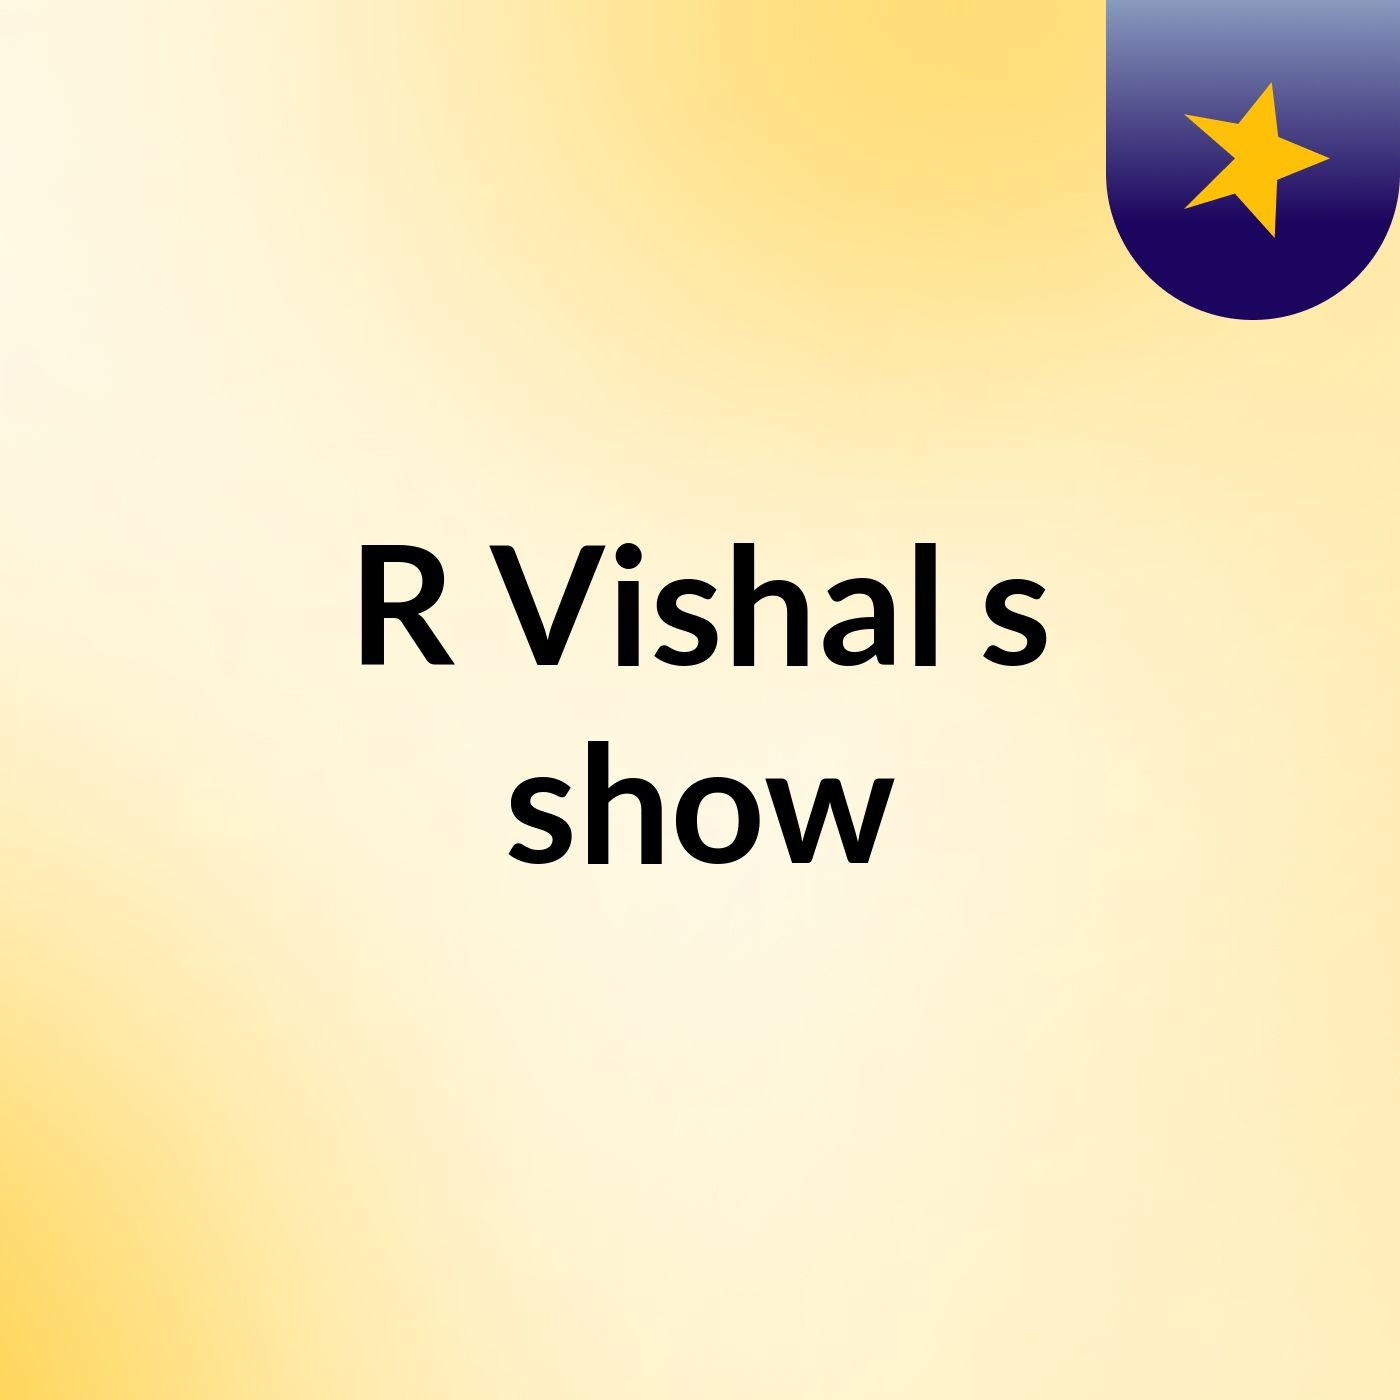 R Vishal's show